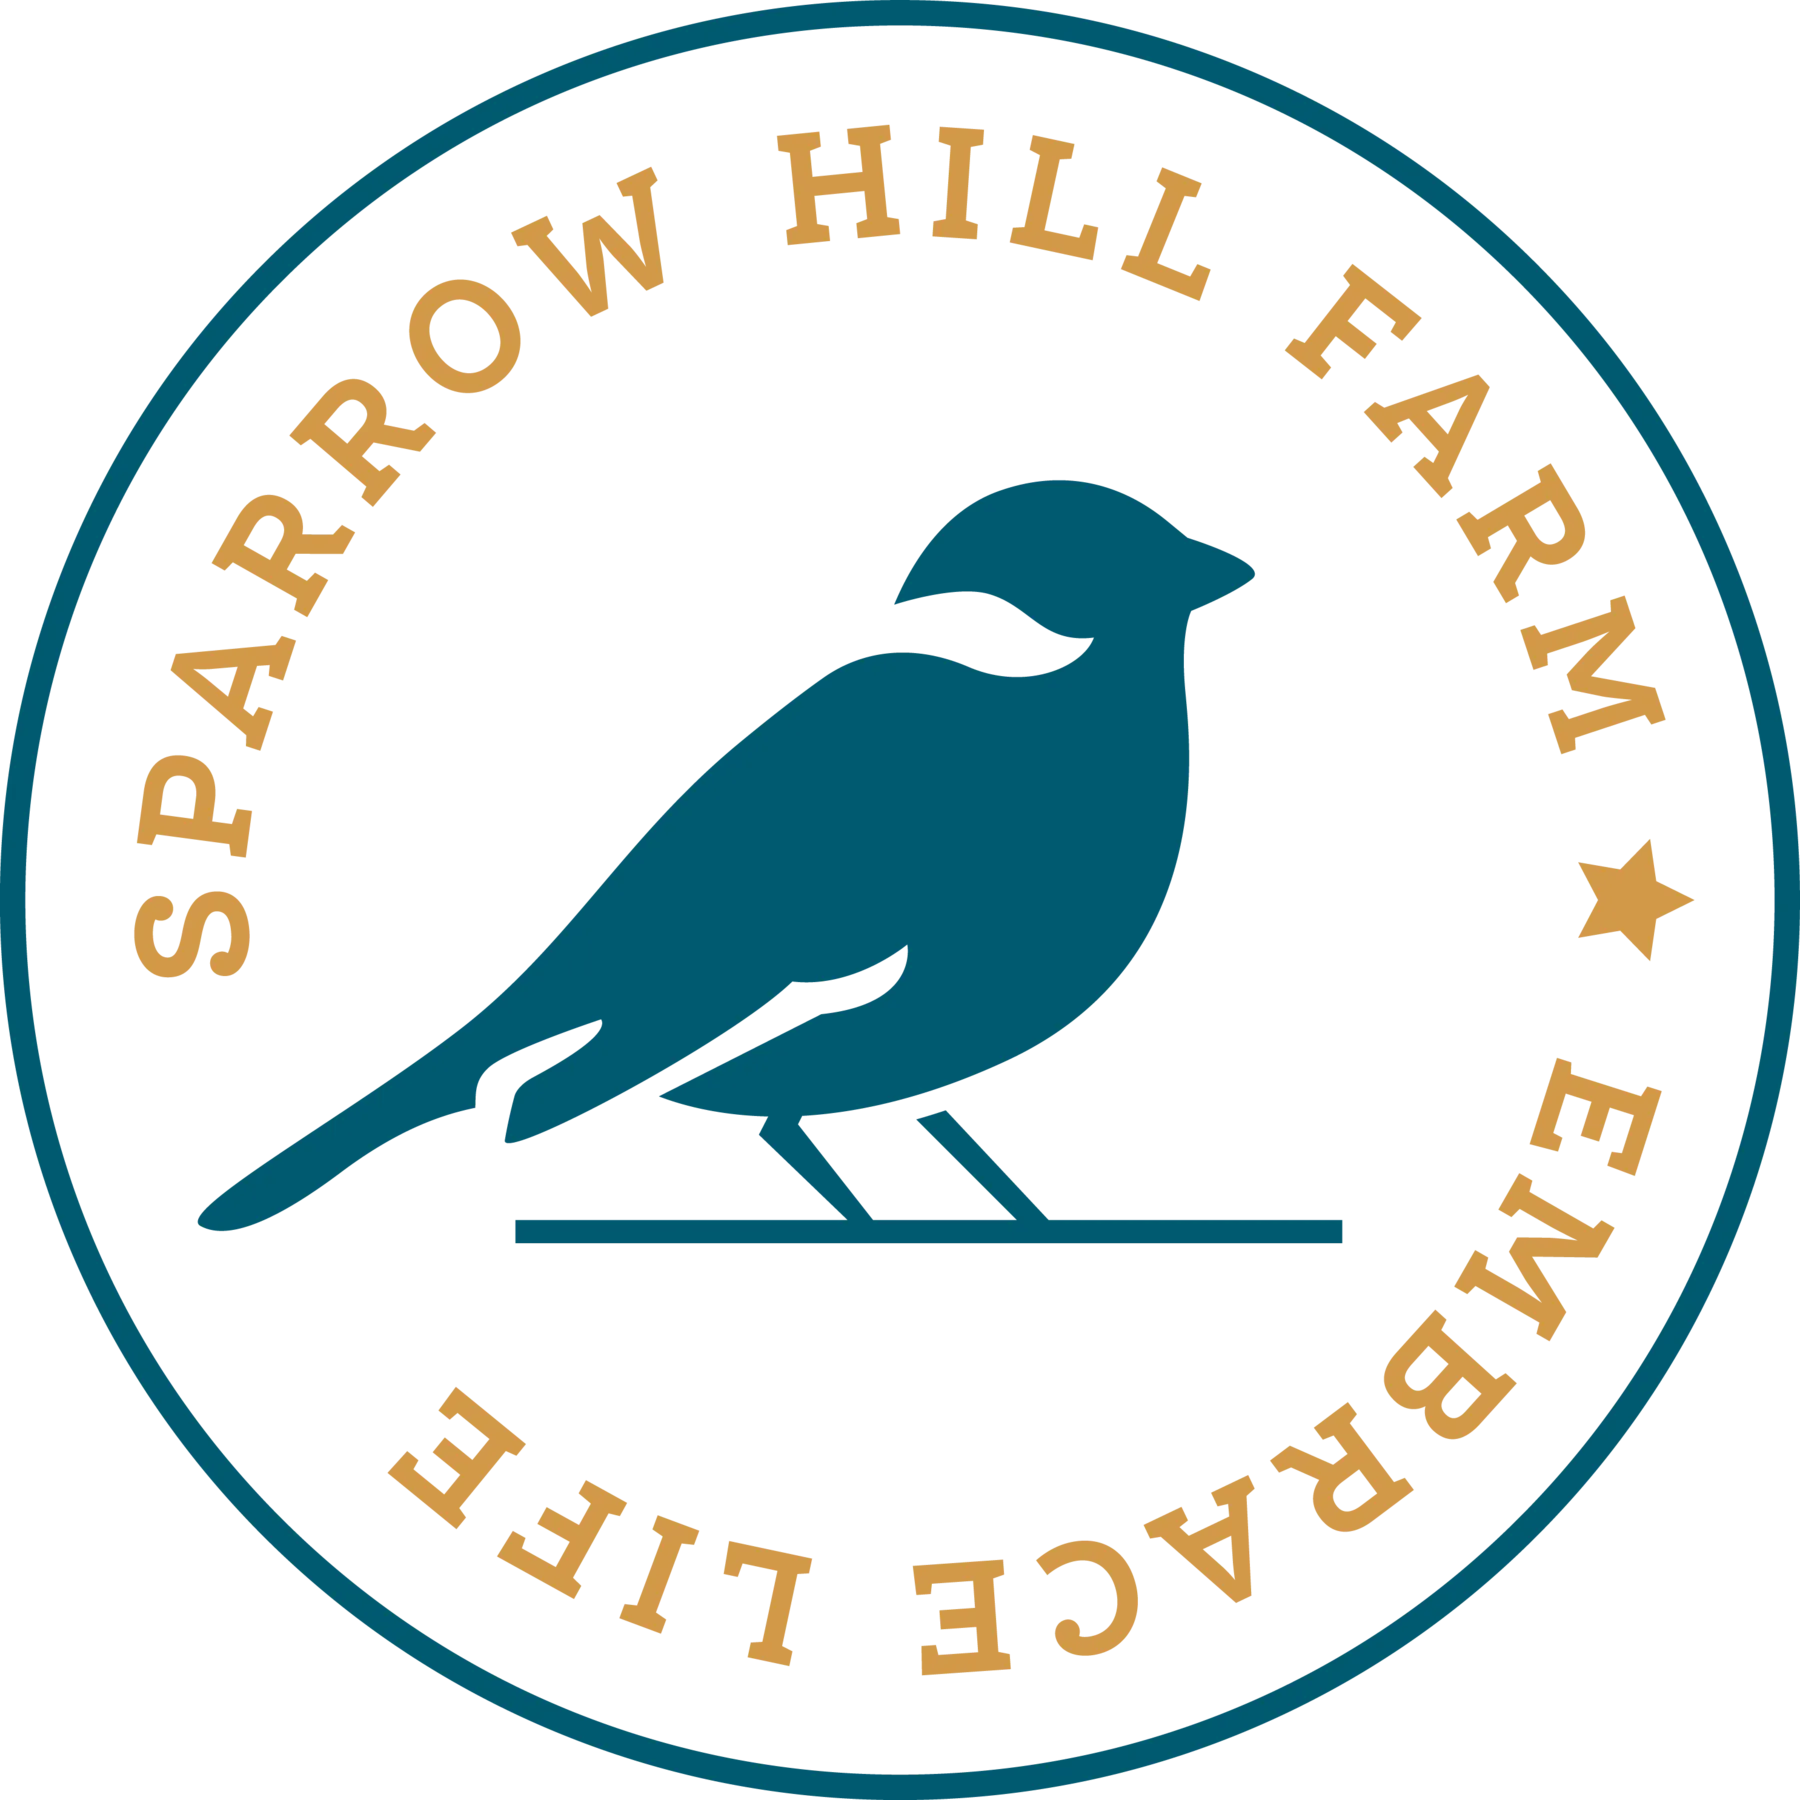 Sparrow Hill Farm